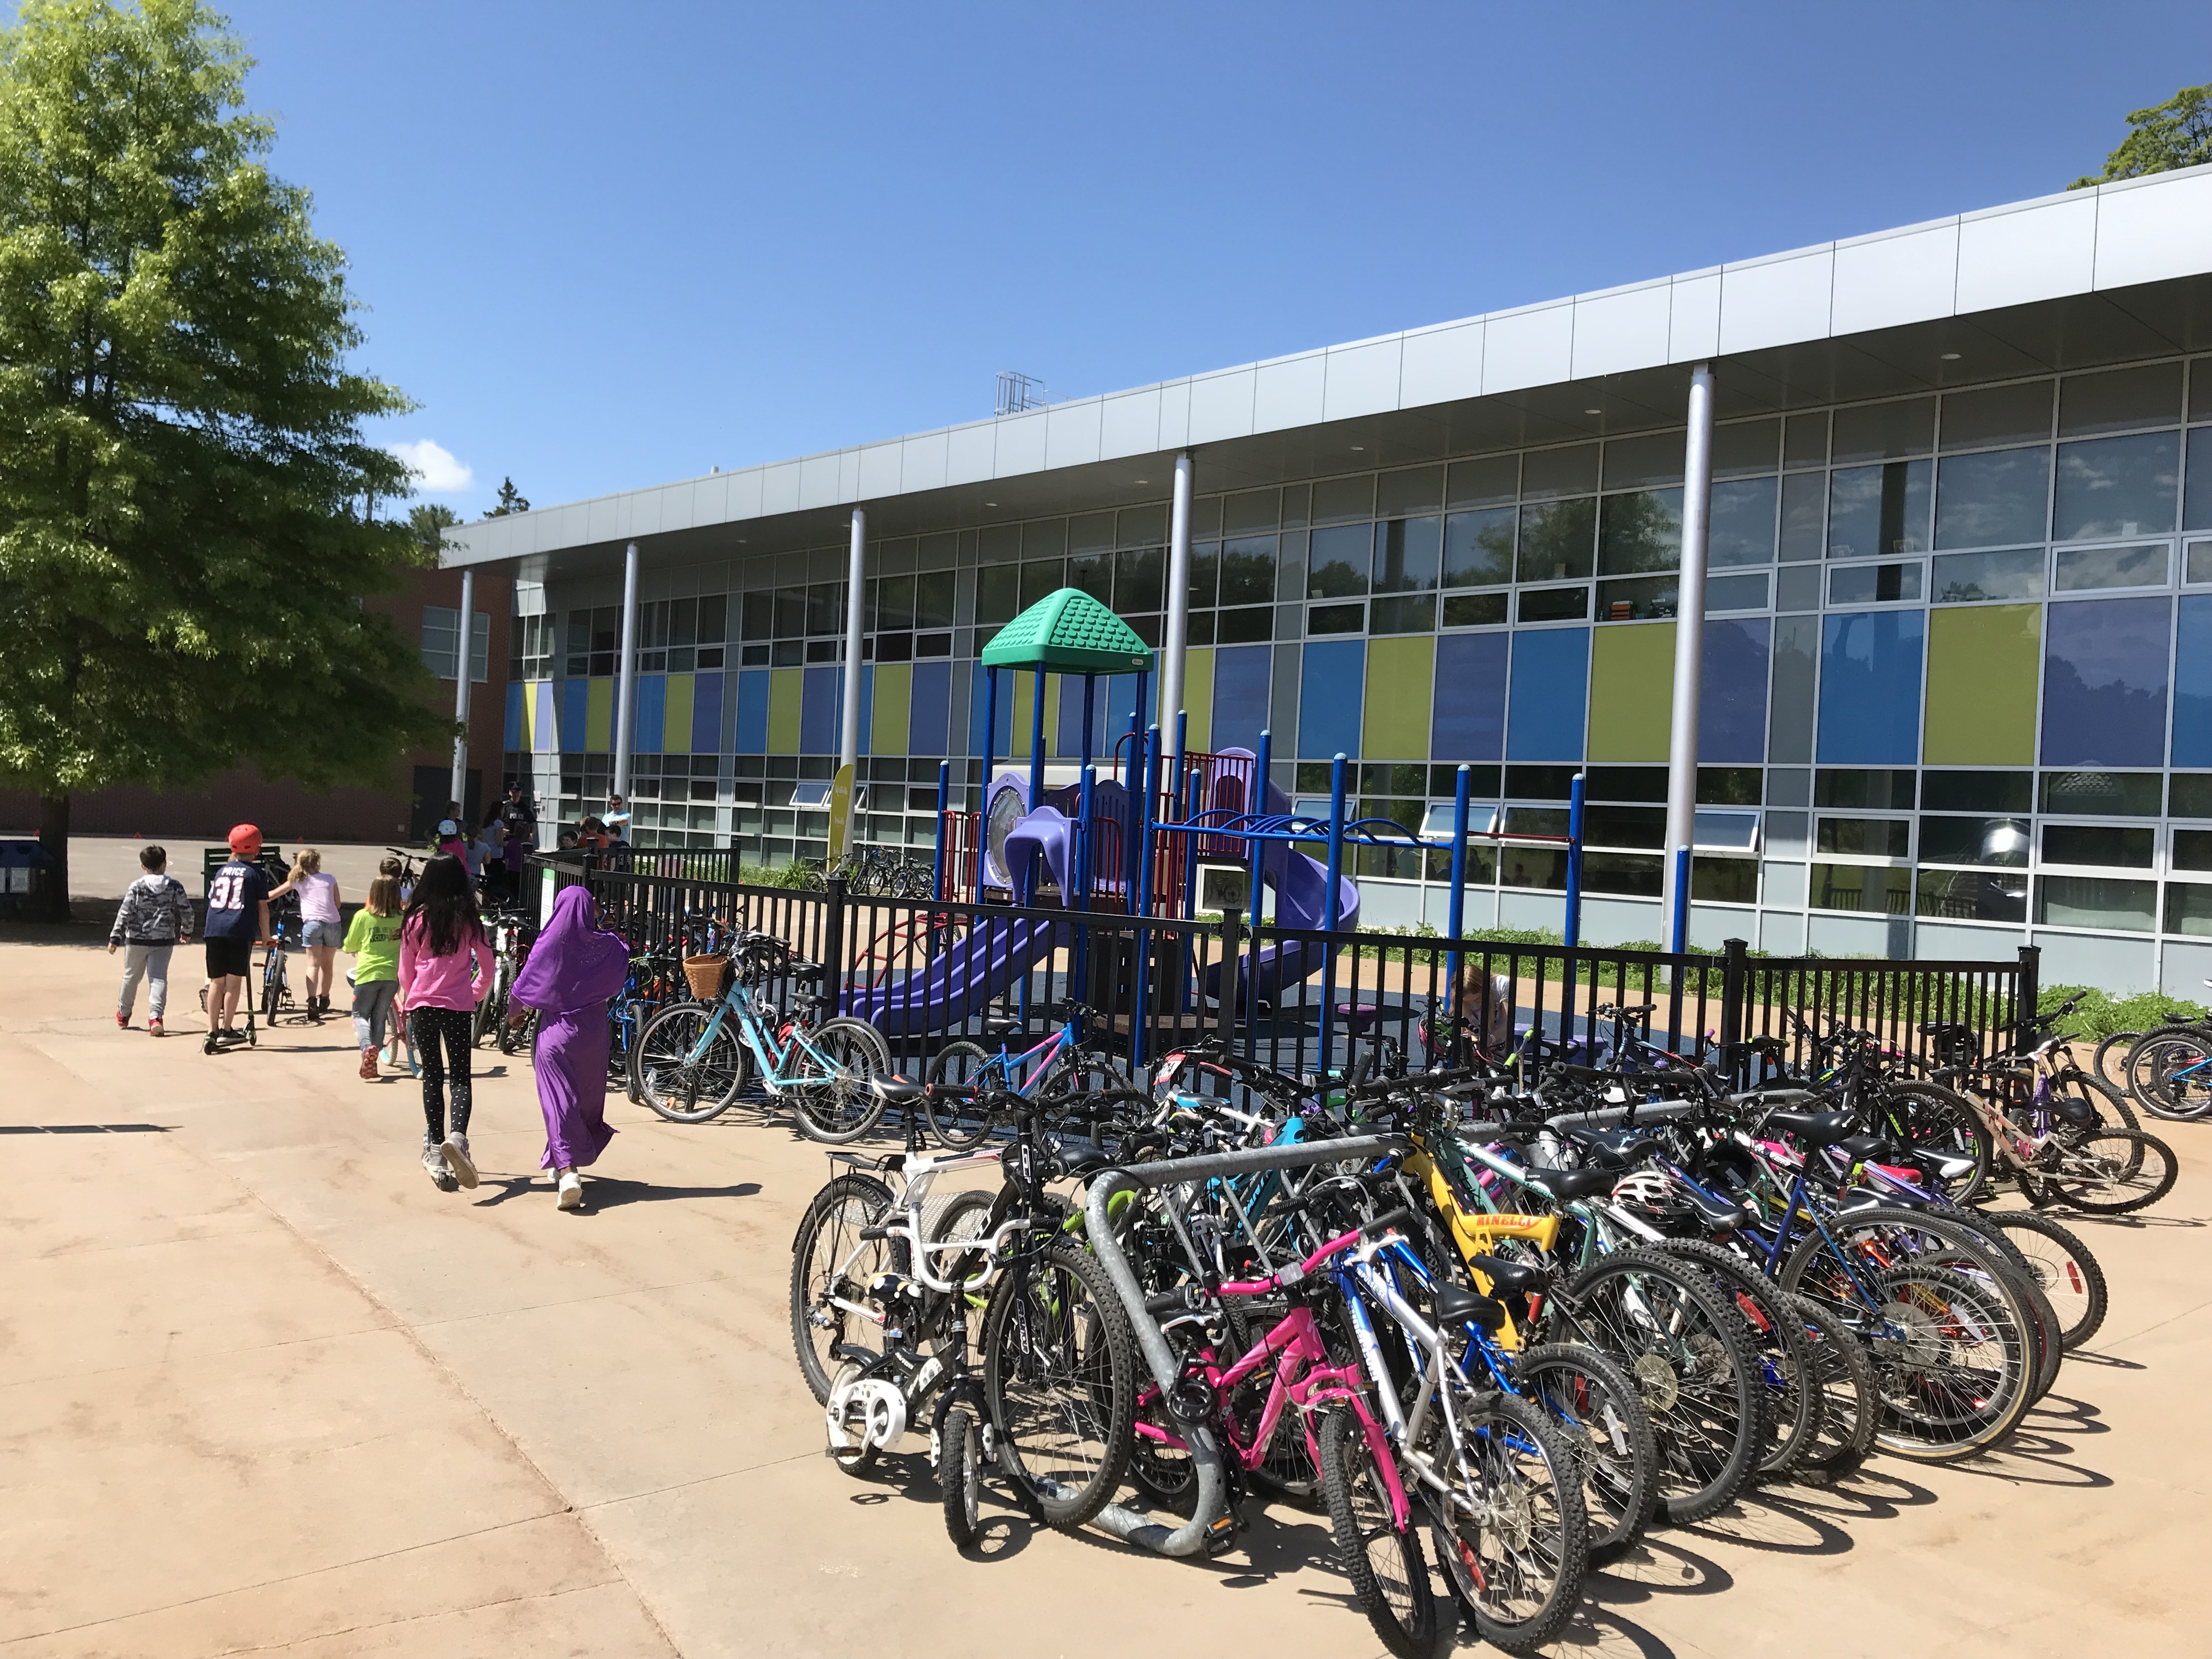 Bikes in front of school